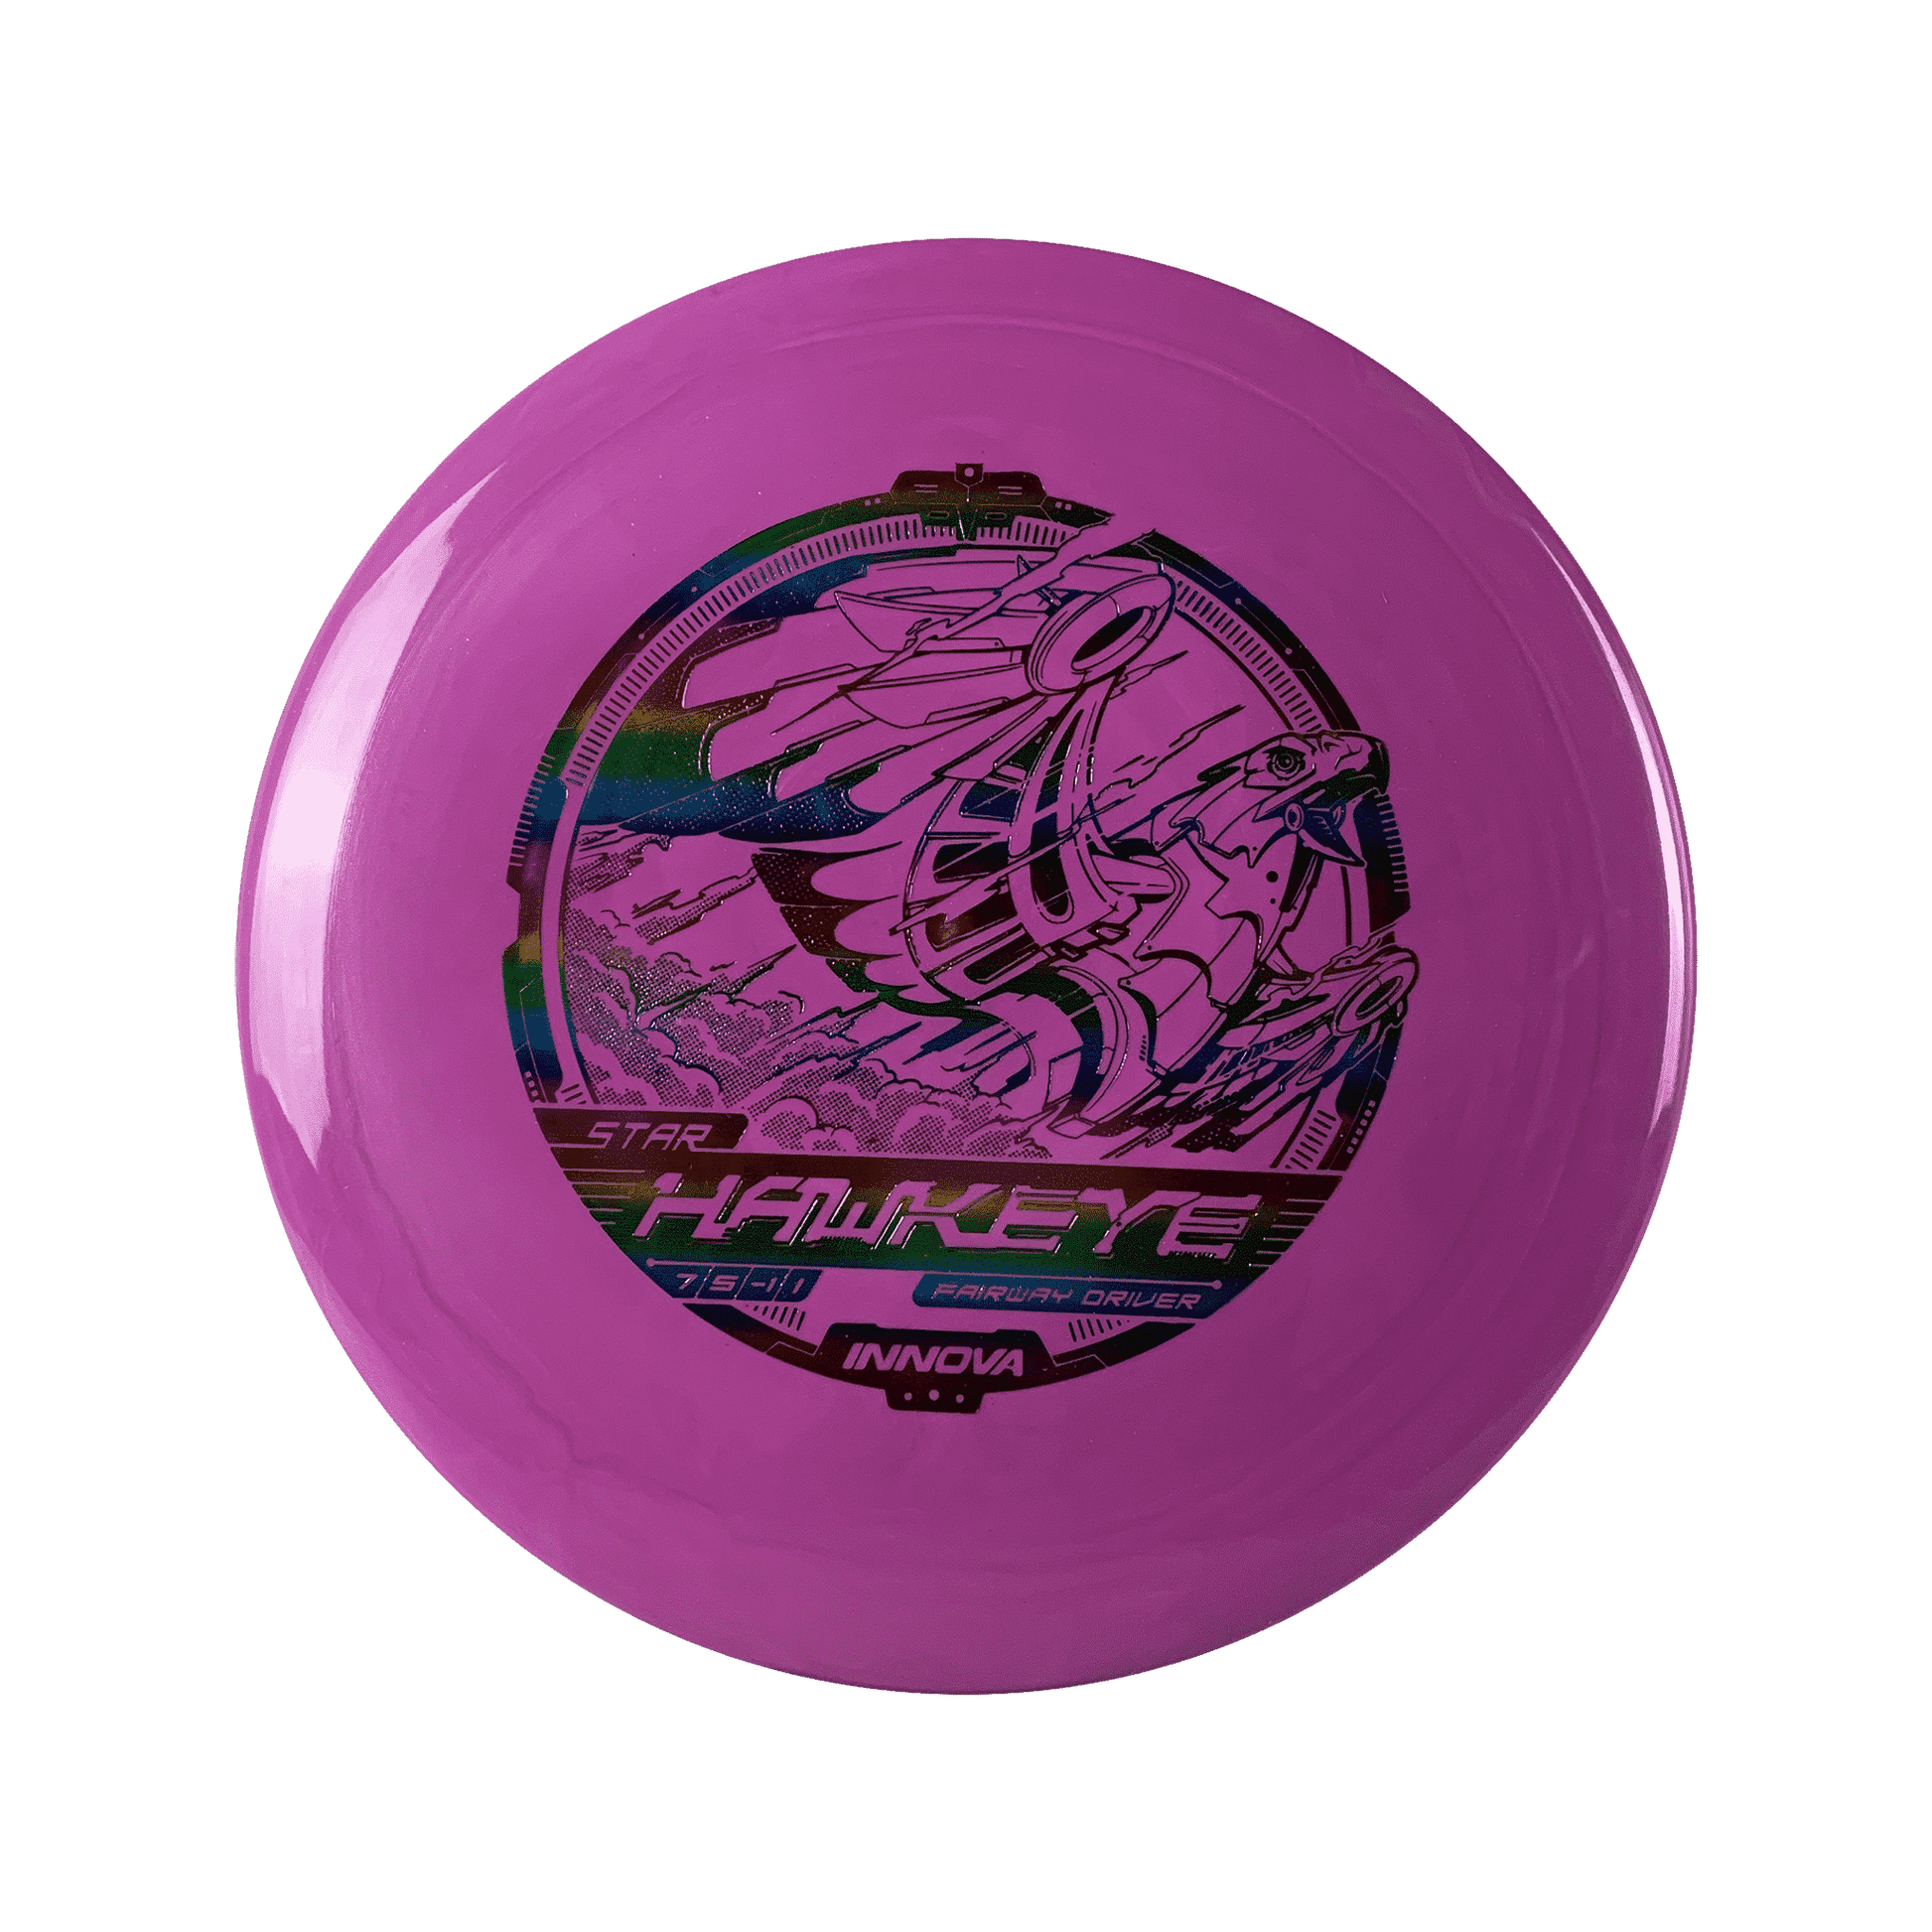 Star Hawkeye Disc Innova pink 173 